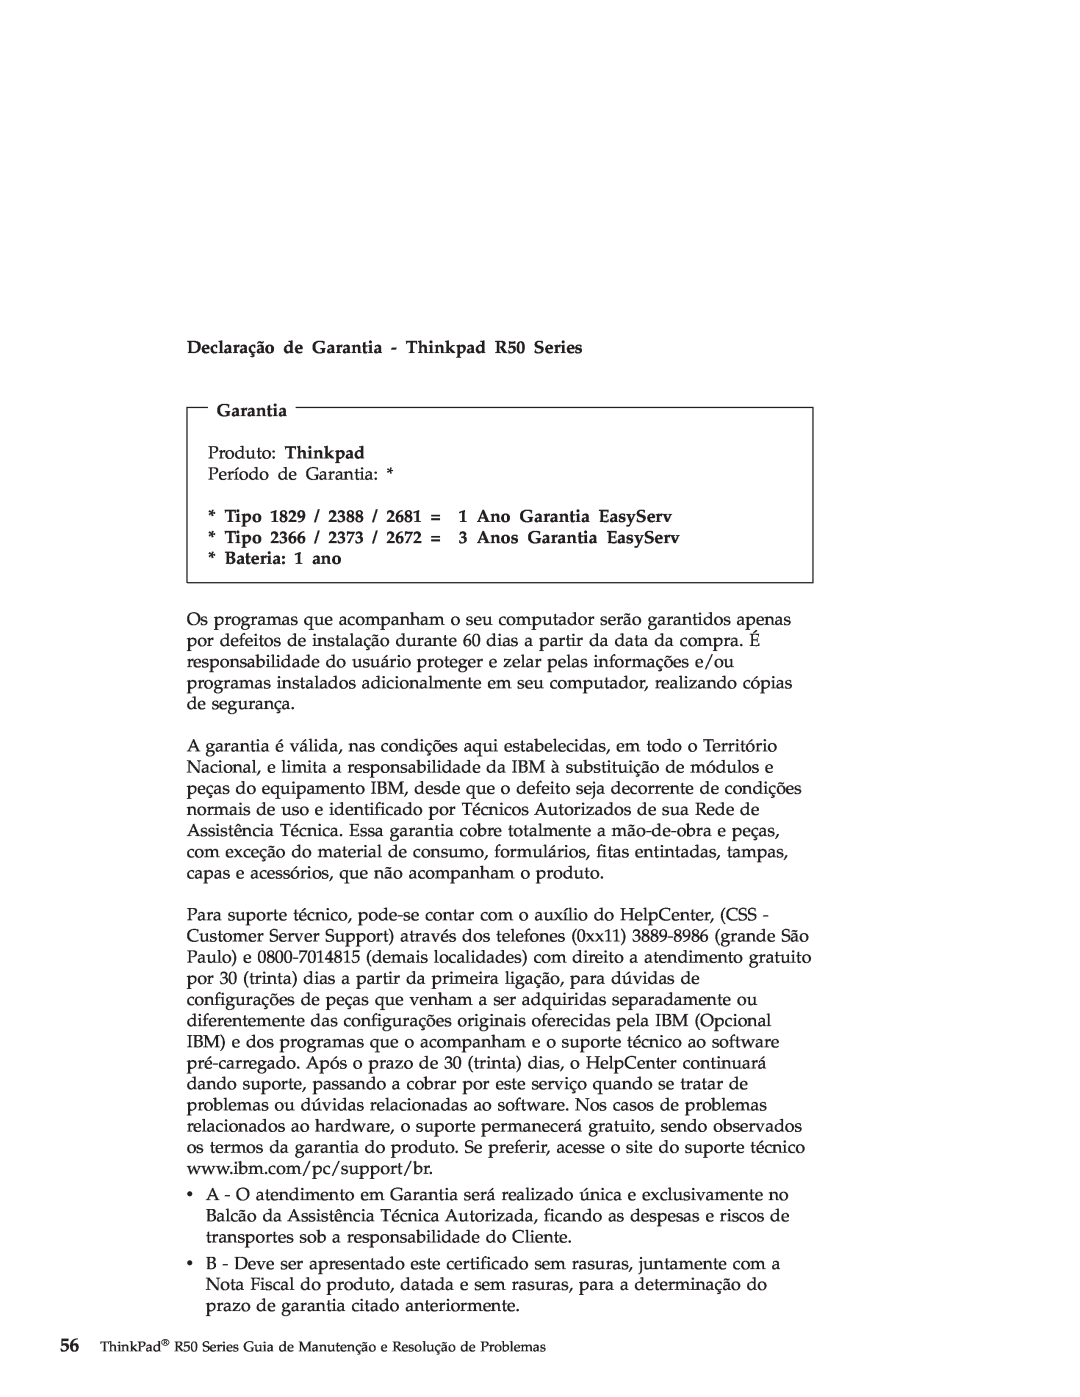 IBM Declaração de Garantia - Thinkpad R50 Series, Tipo 1829 / 2388 / 2681 = 1 Ano Garantia EasyServ, Bateria: 1 ano 